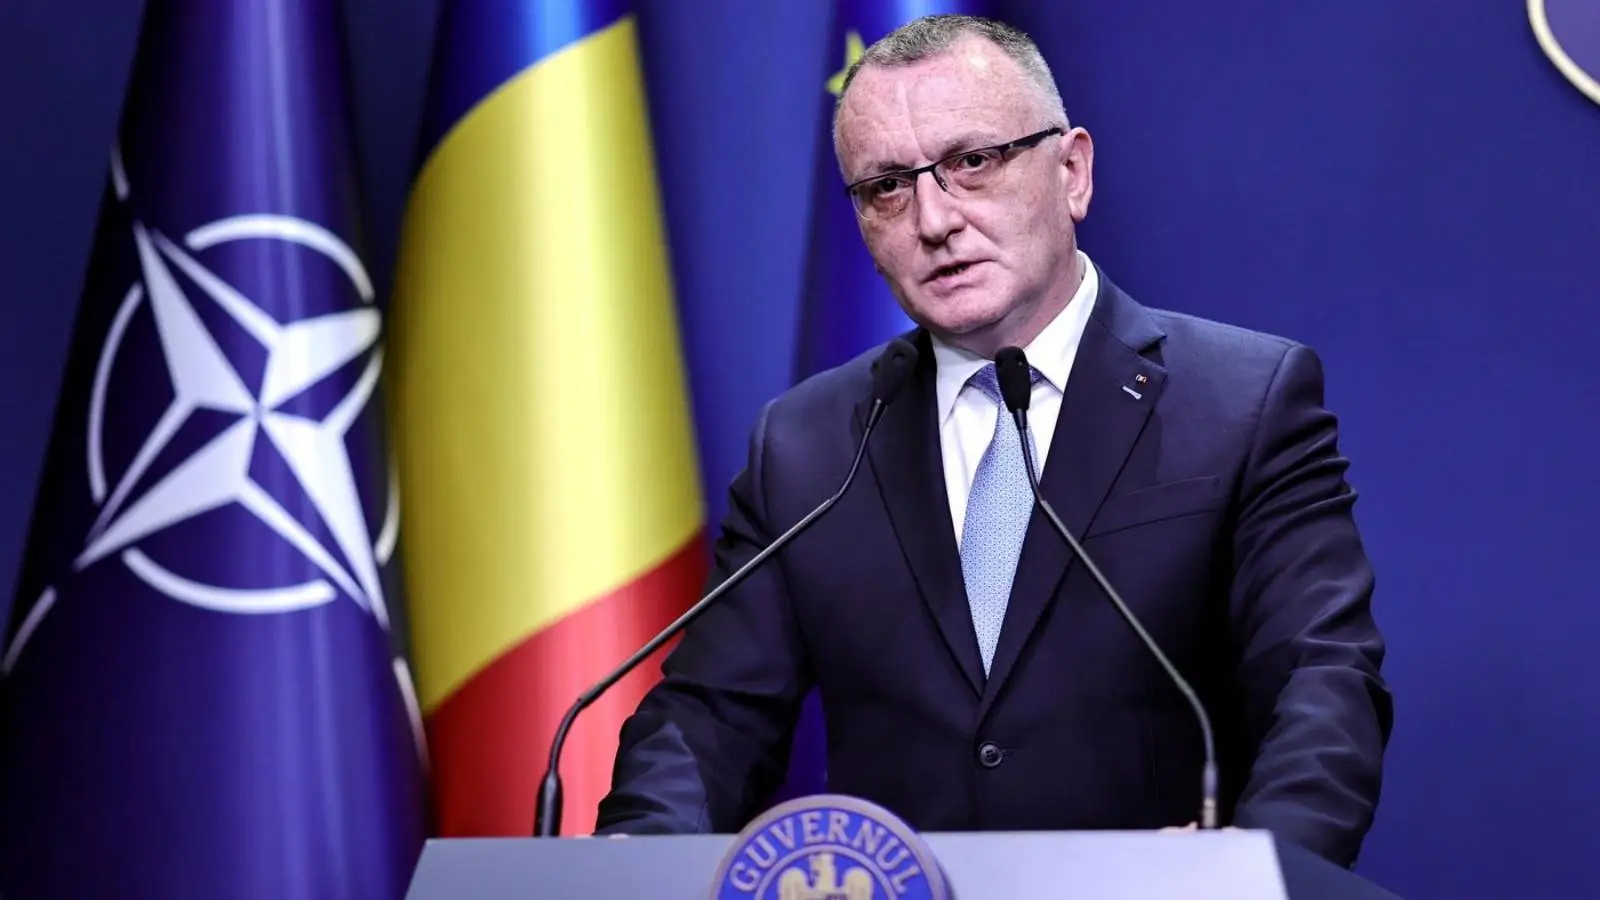 Utbildningsminister SENASTE GÅNG Viktigt nationellt meddelande för alla rumäner